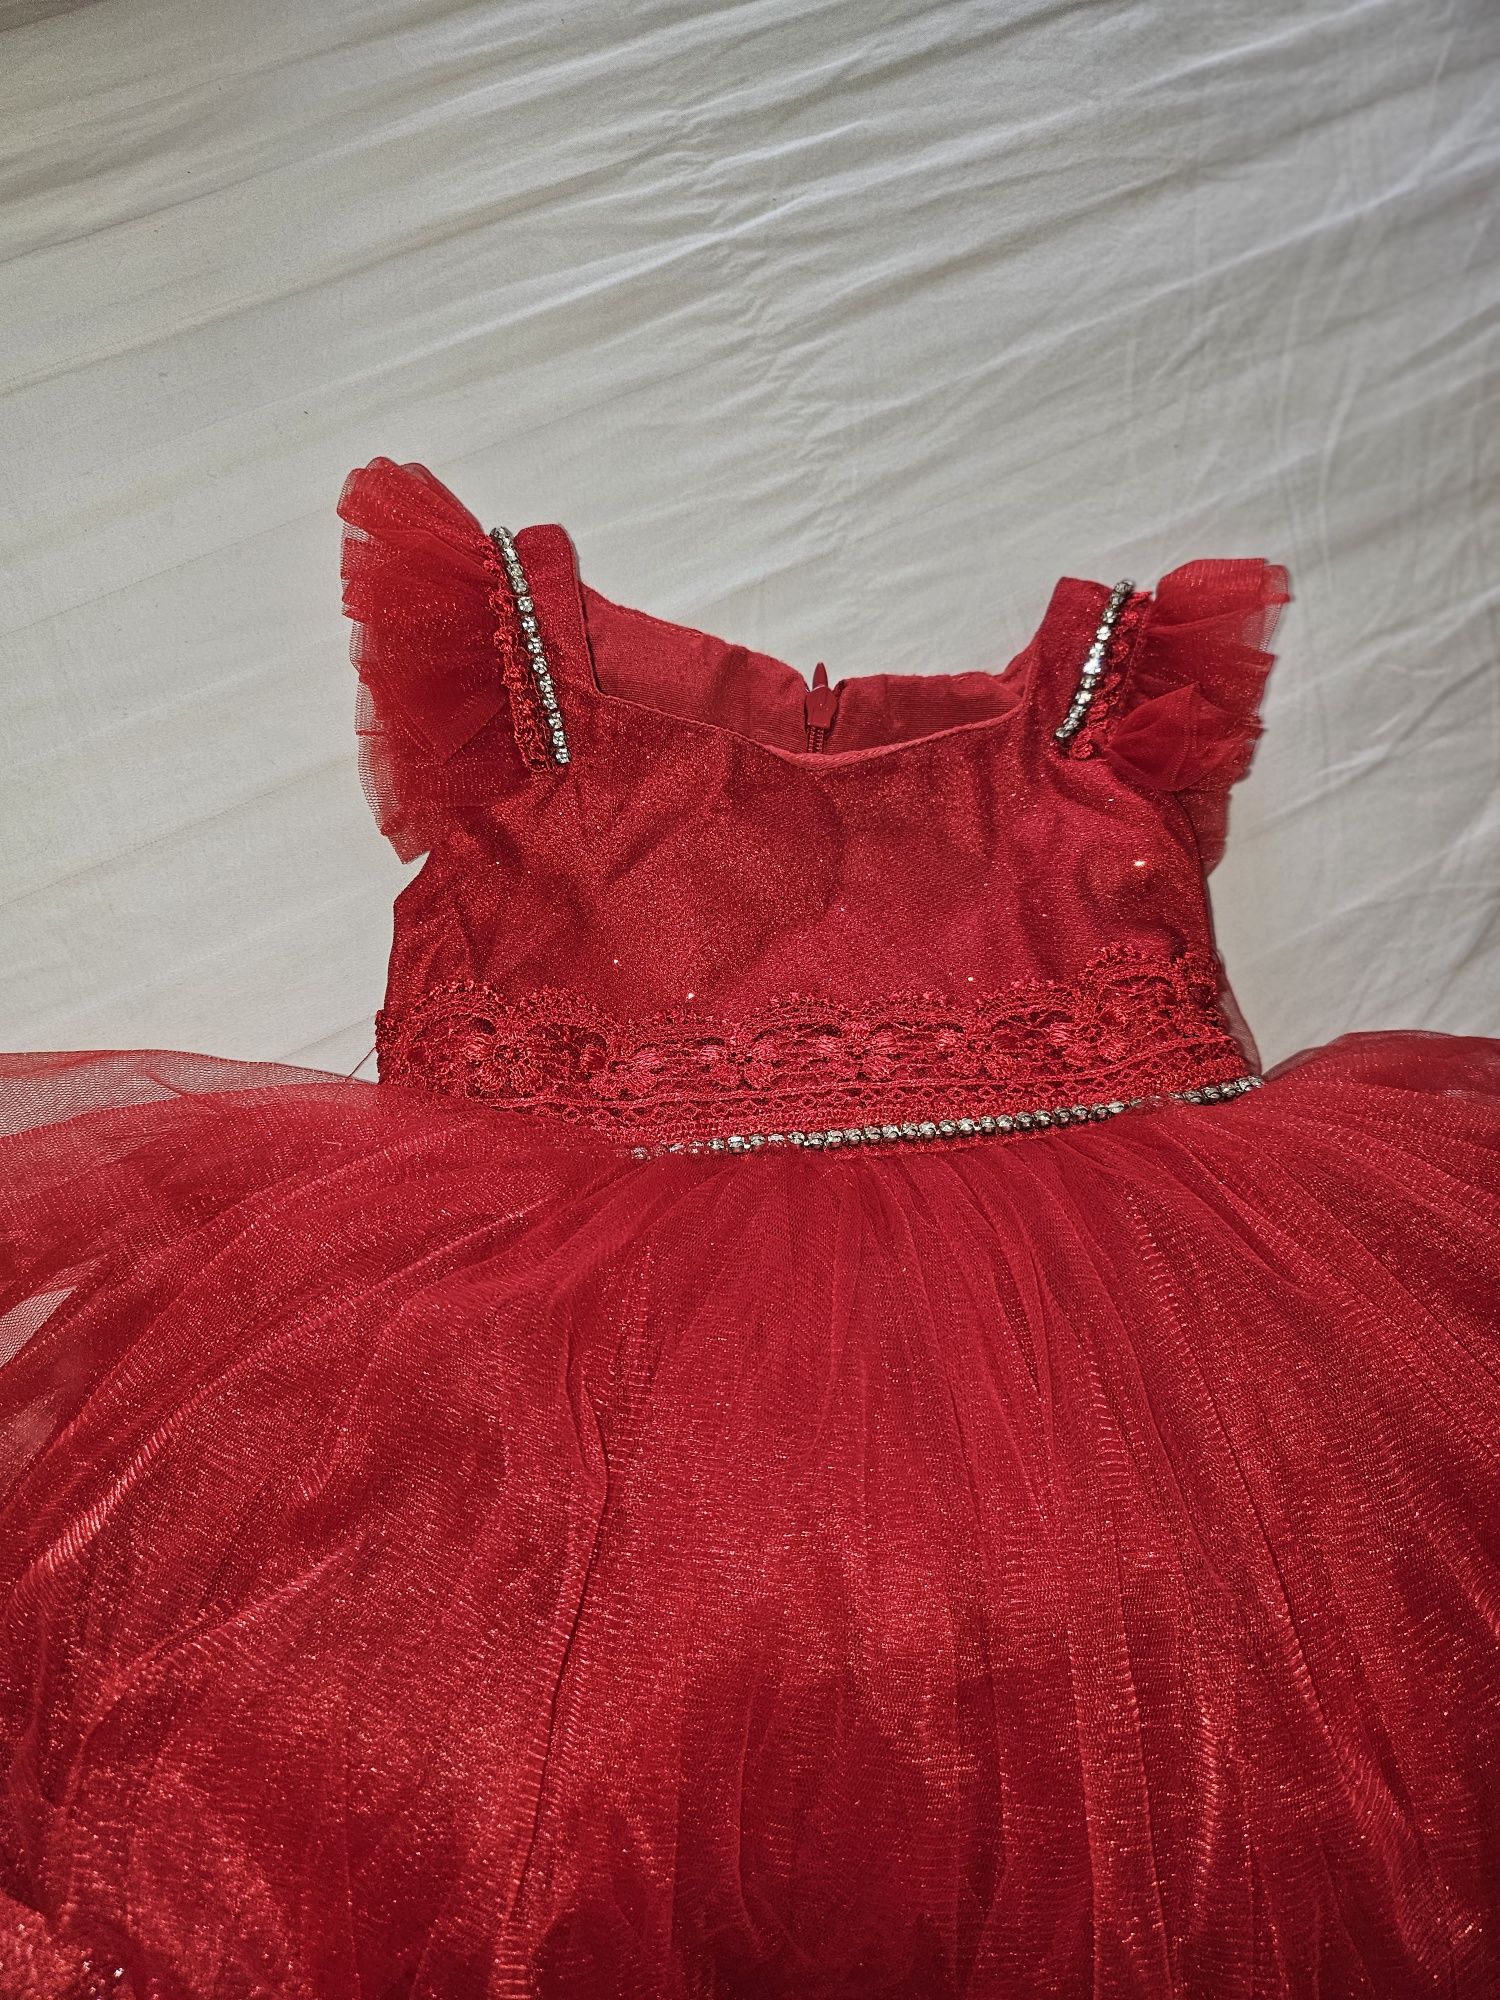 Rochie roșie, fetiță 10-12 luni.